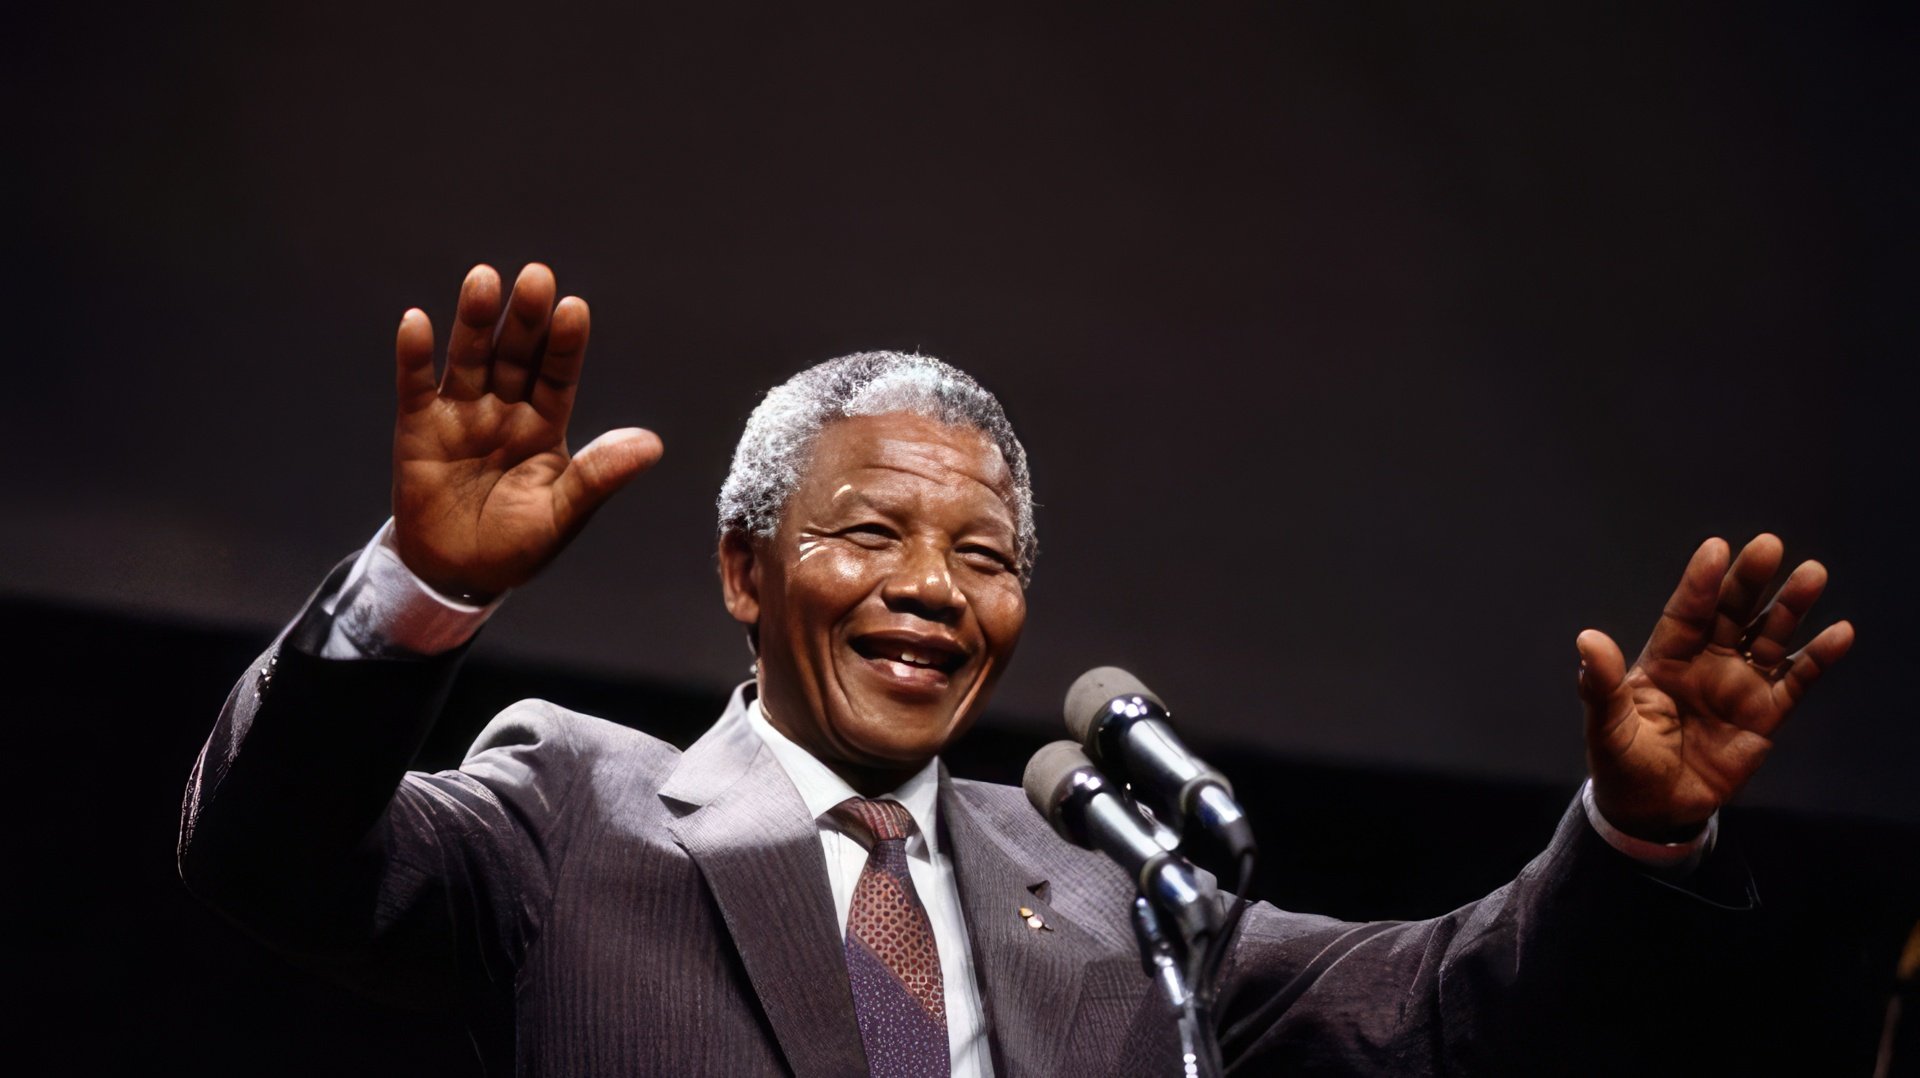 South African President ‒ Nelson Mandela